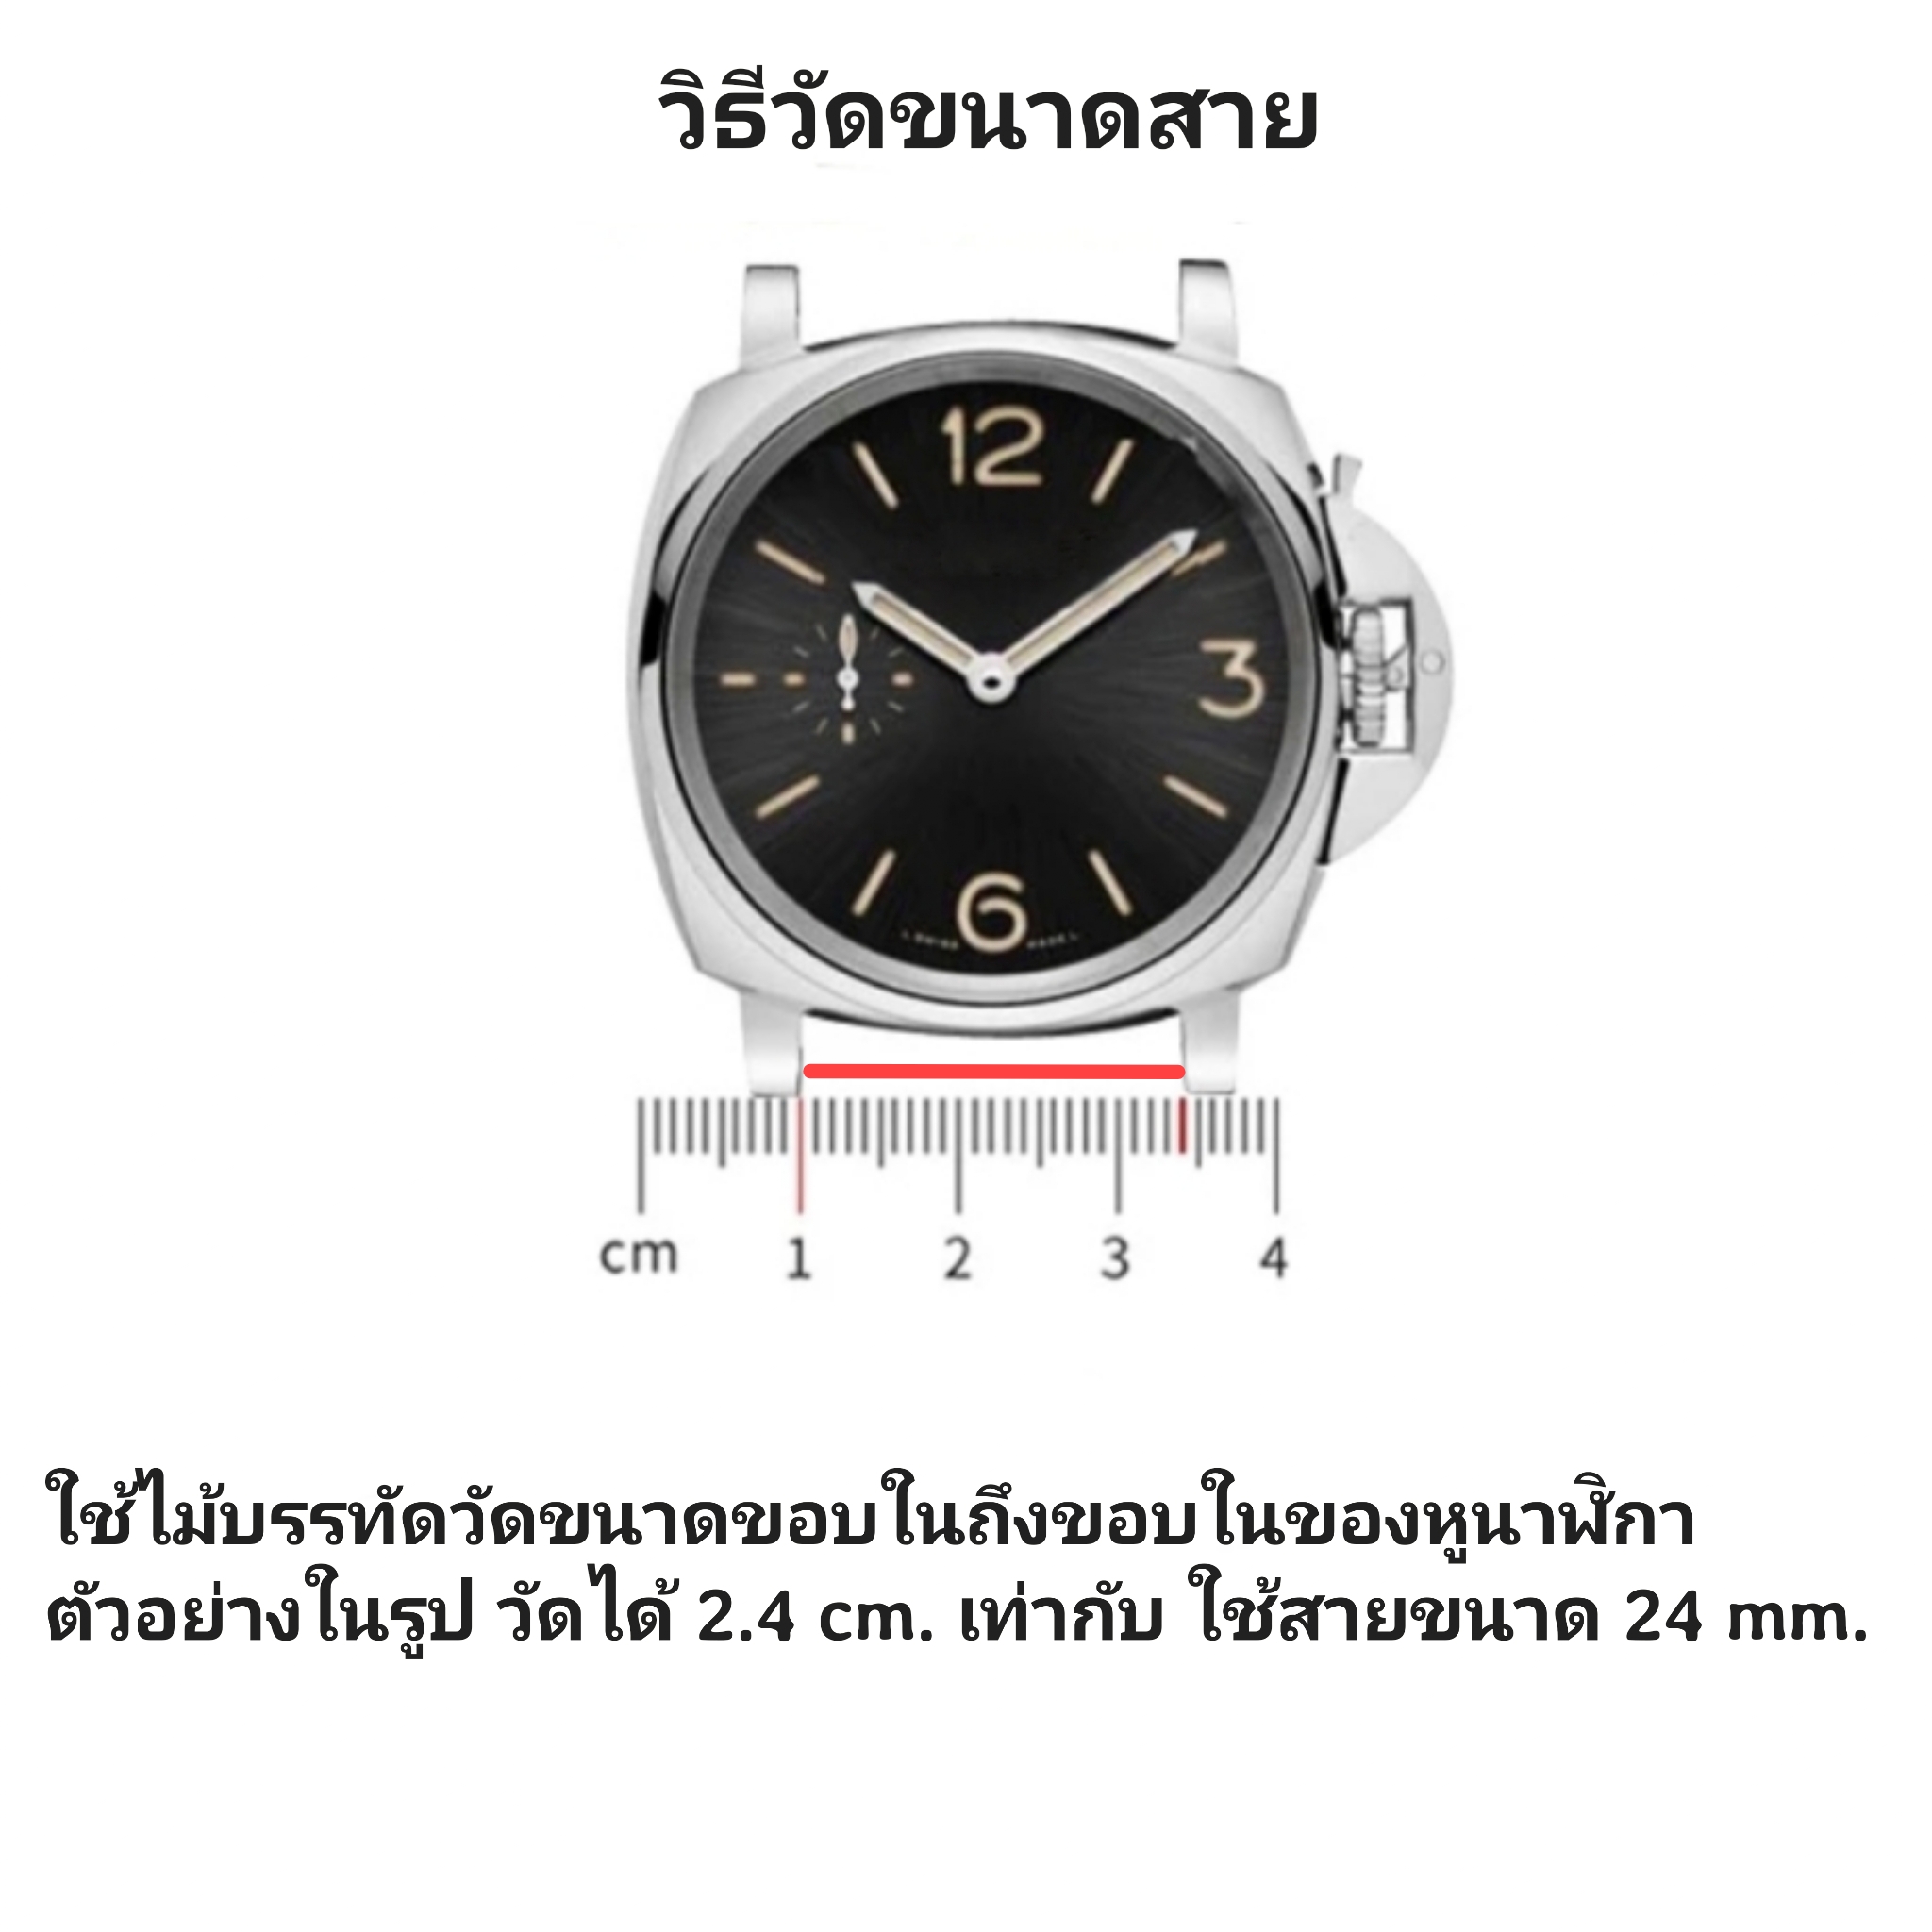 ข้อมูลประกอบของ สายนาฬิกาหนังแท้ สีดำ งานhandmade #รุ่นMidnight มีขนาดสาย 18-30 mm. แถมฟรีสปริงสำรองและที่ดันสปริงสำหรับเปลี่ยนสาย